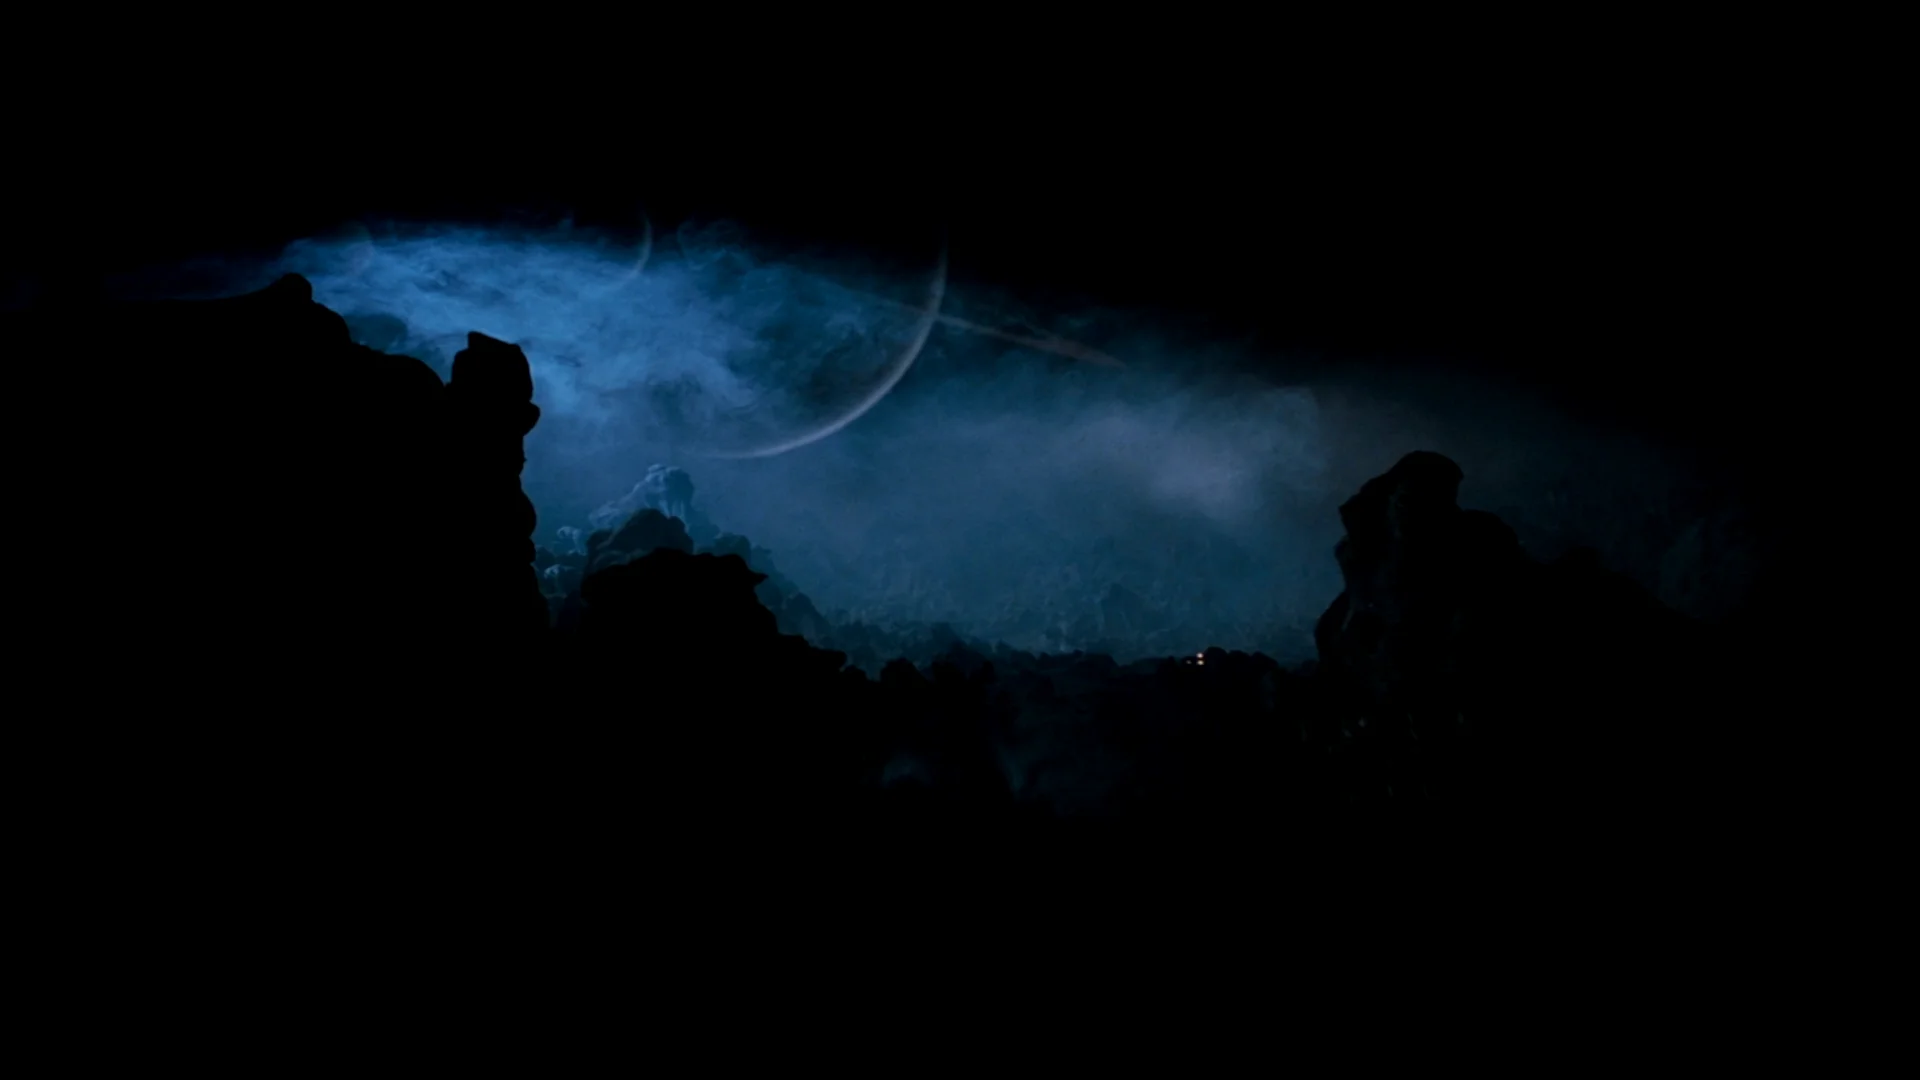 LV-426地表，巨星掩盖天空的景象不亚于异种生物带来的恐惧